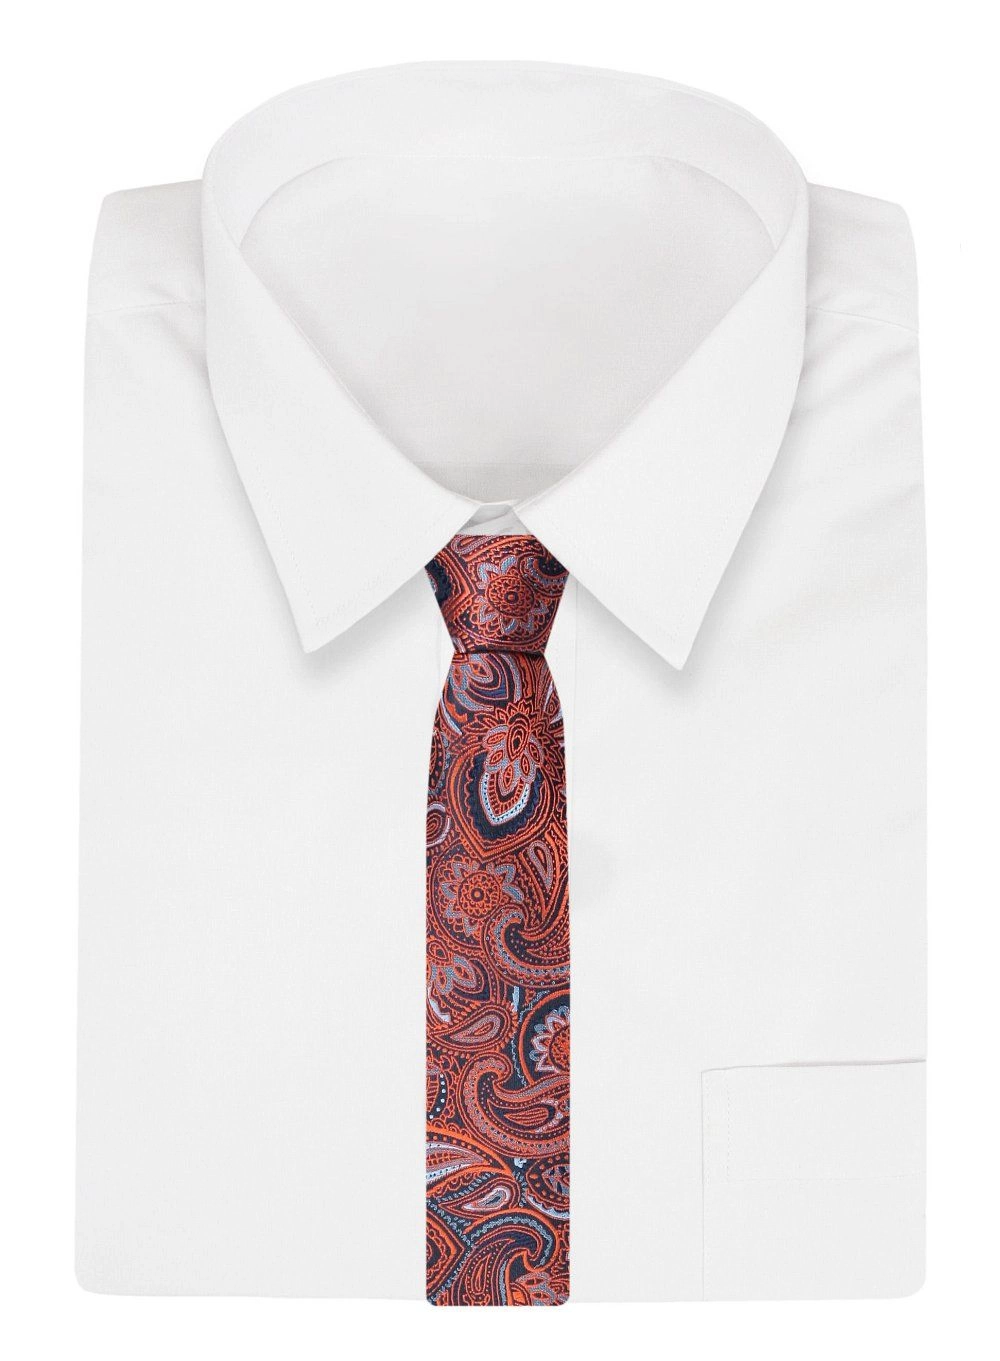 Krawat Klasyczny, Granatowo-Pomarańczowy w Paisley, Męski, Szeroki 8 cm, Elegancki -CHATTIER